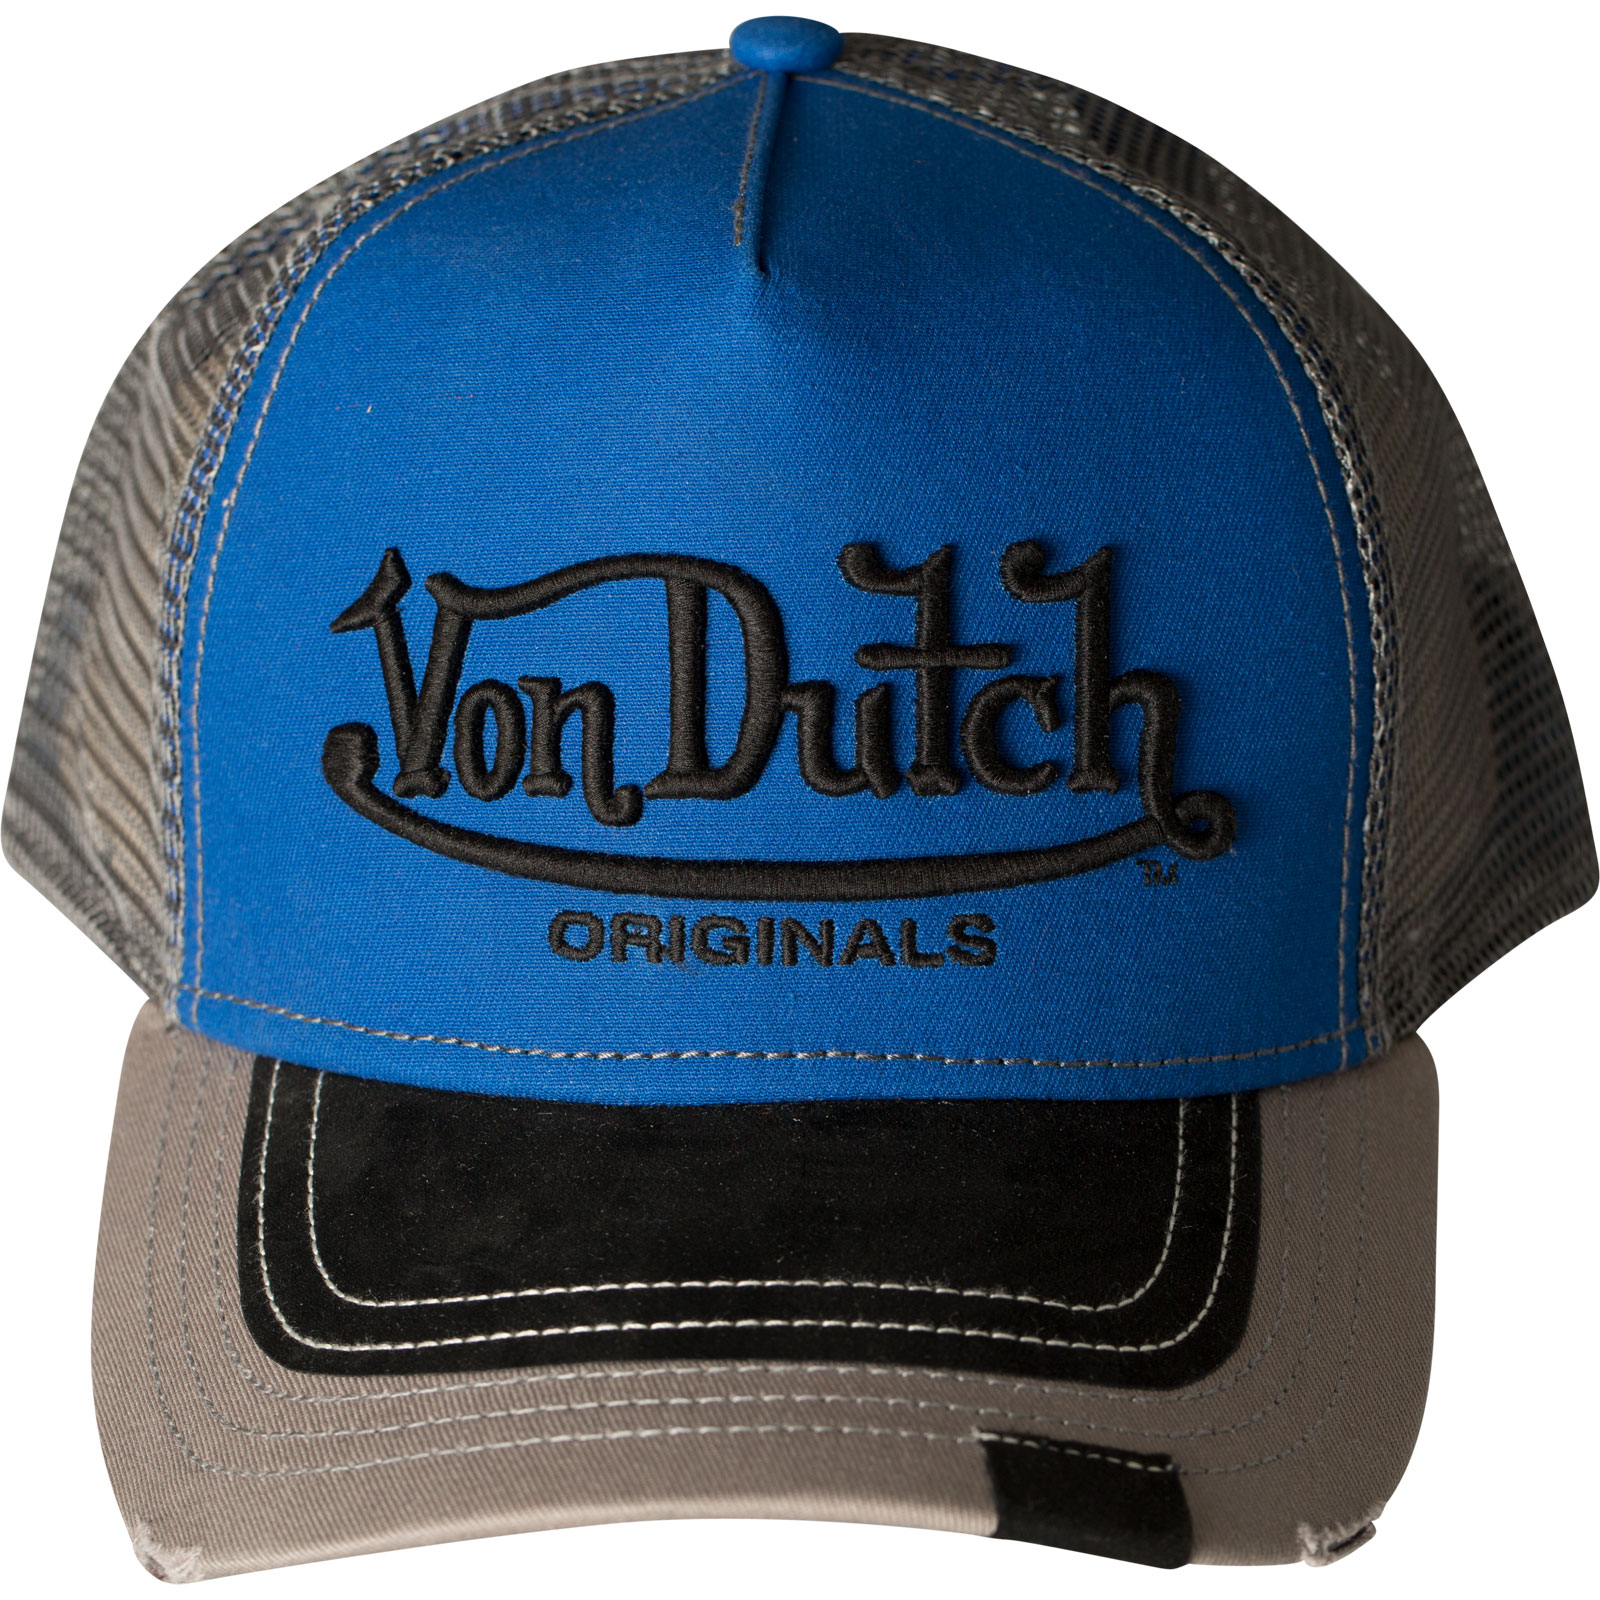 Logo VDHT 005 Premium Trucker Cap by Von Dutch Cap with increased 3D ...